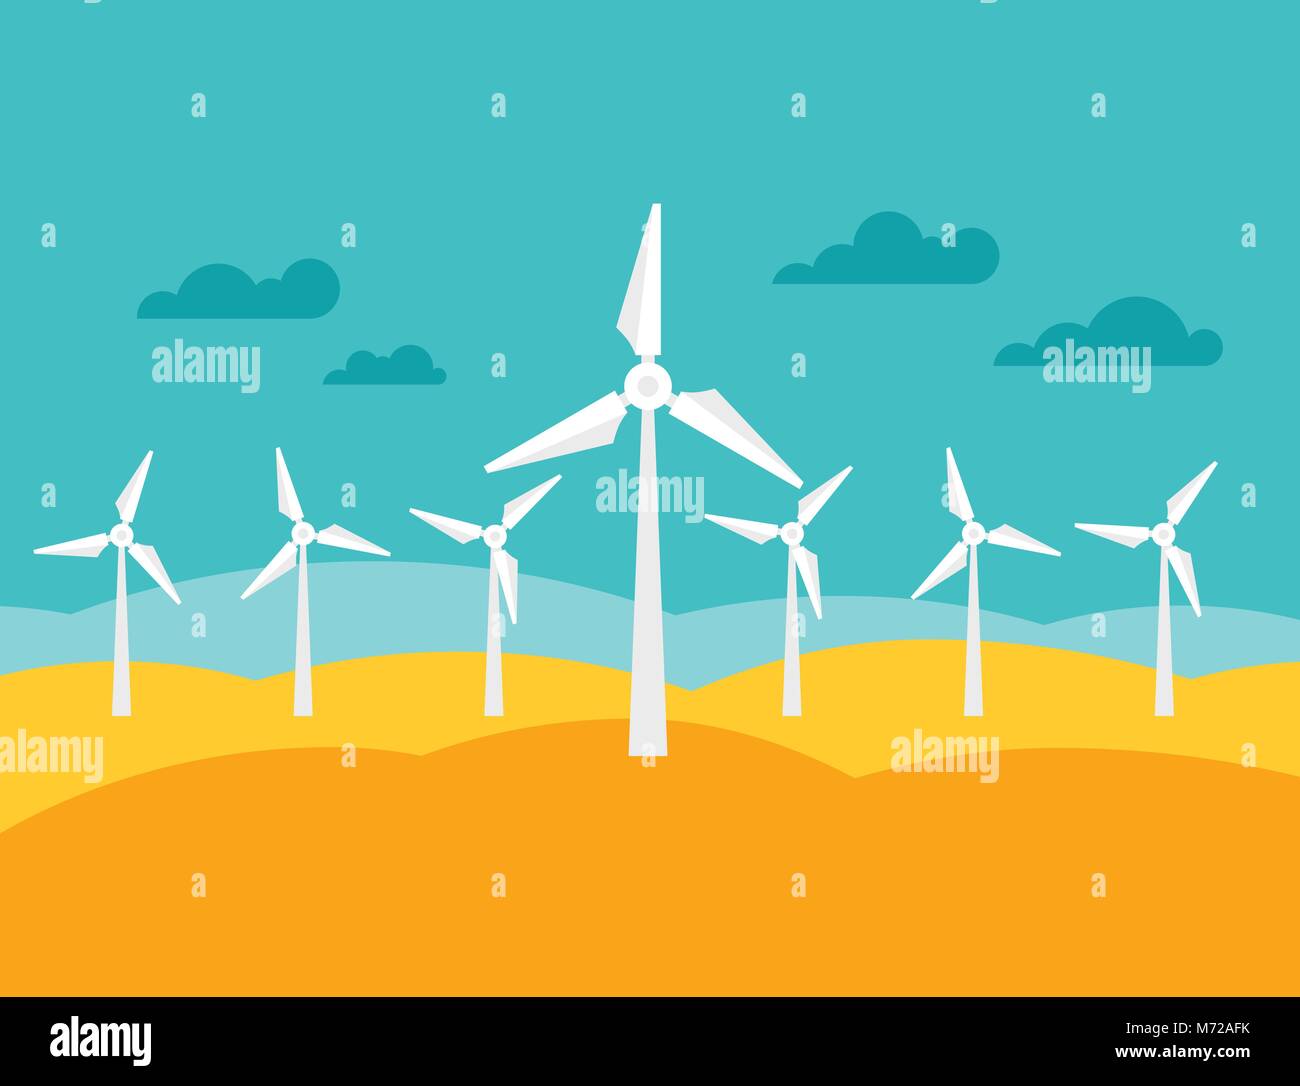 Illustrazione di wind energy power plant in stile piatto Illustrazione Vettoriale